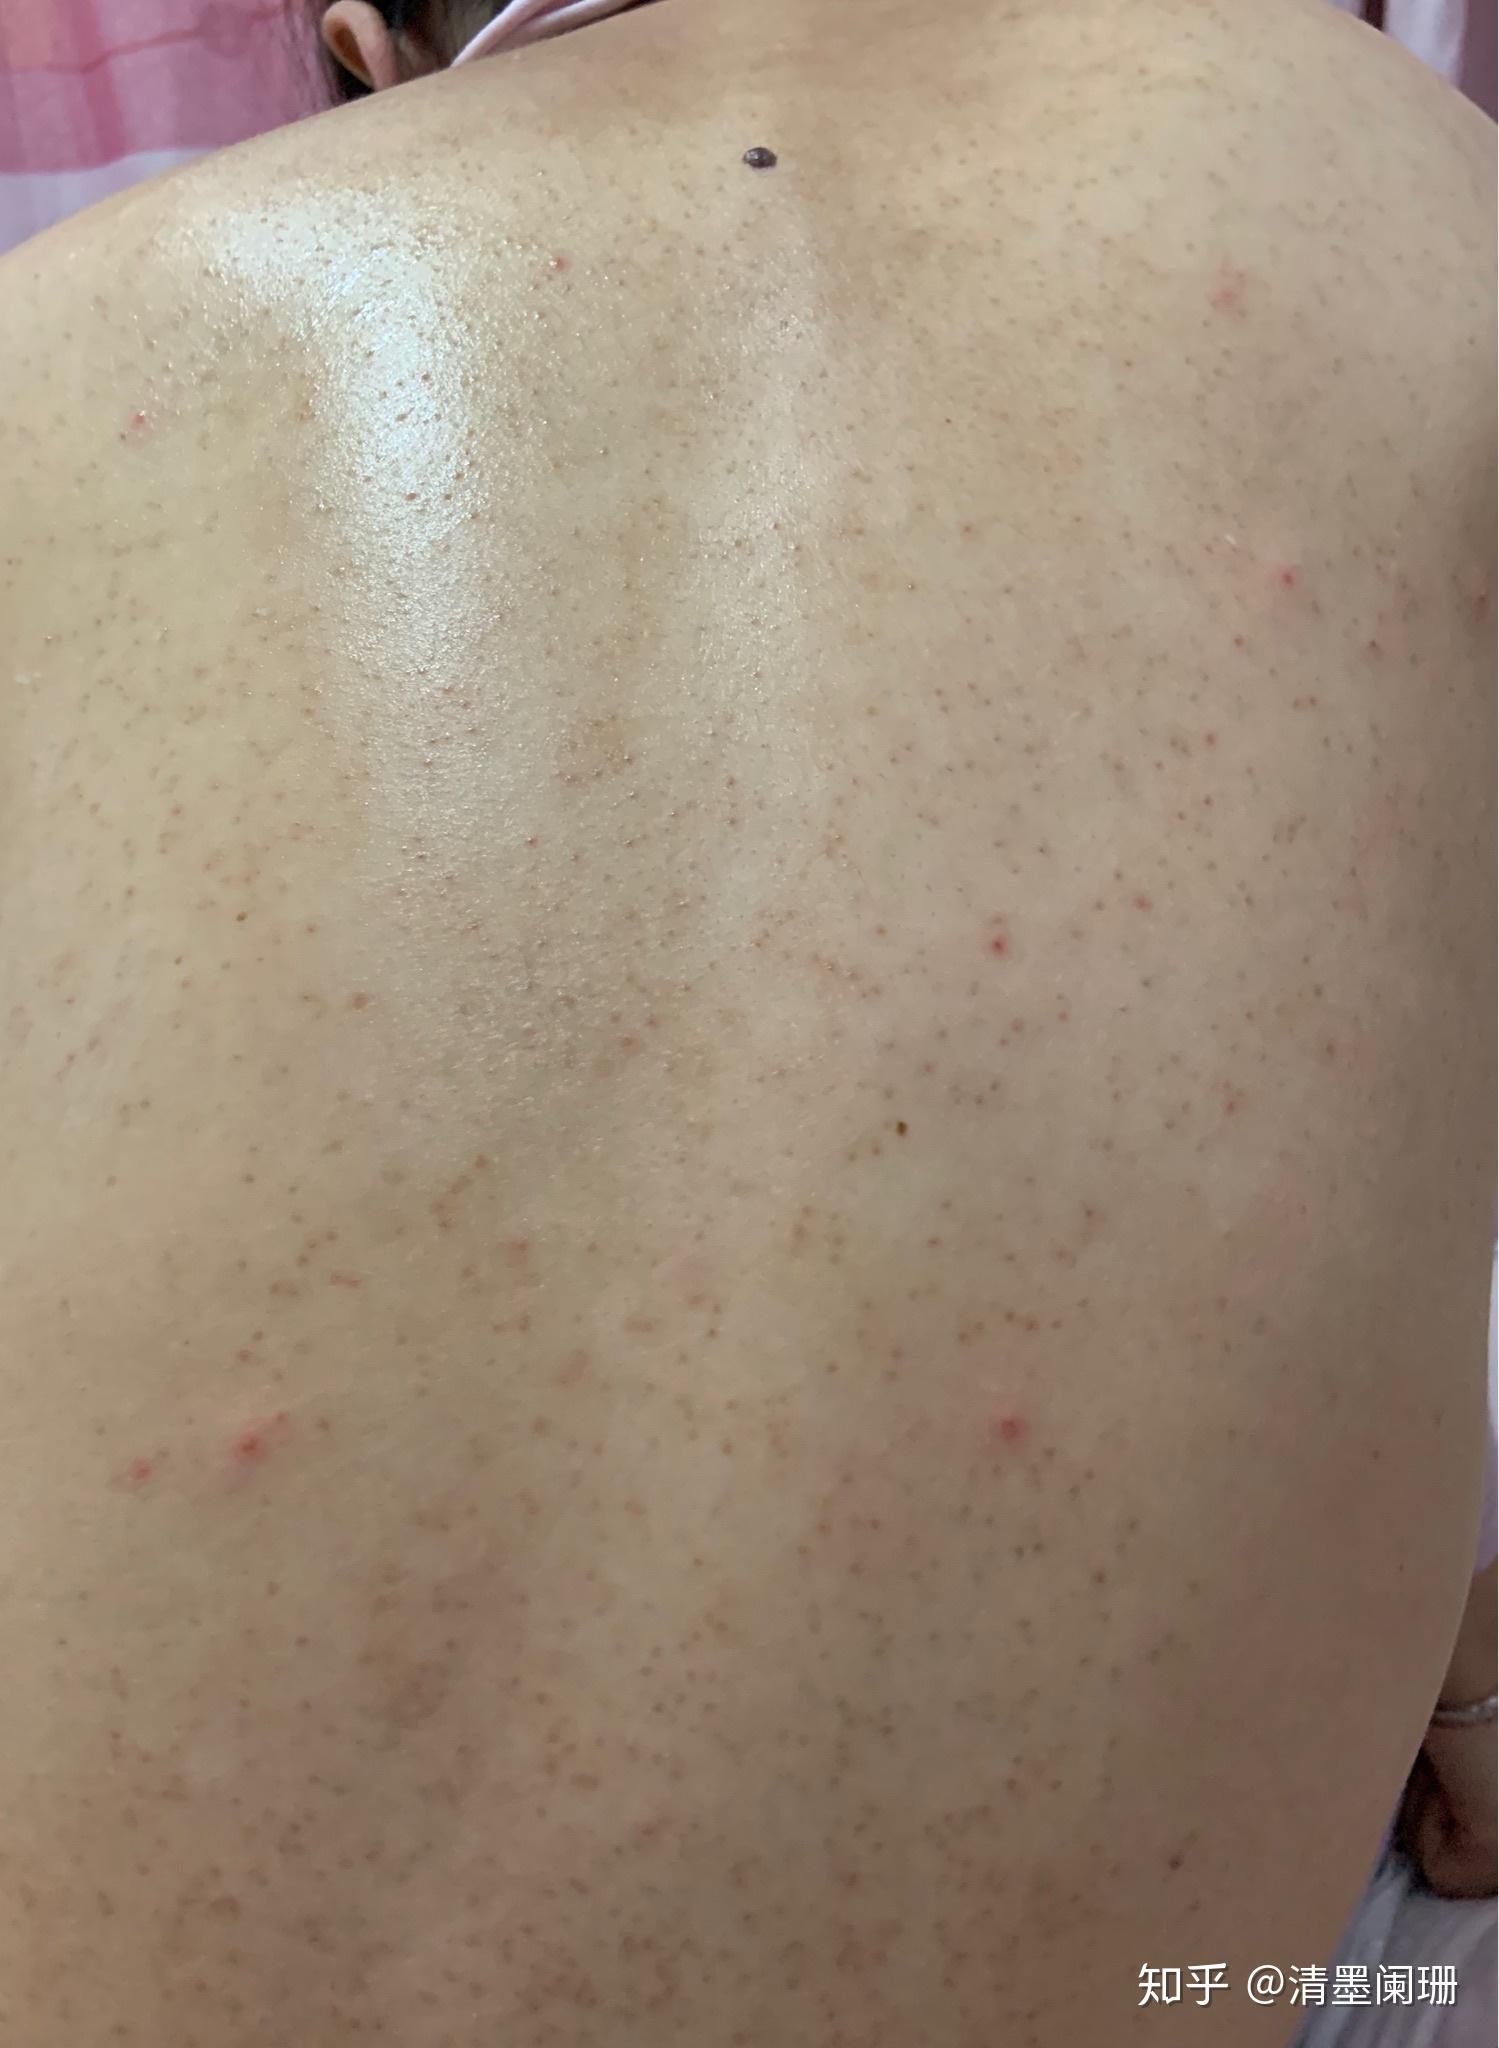 身上长有些小红点，还有的是水泡很痒不知是什么 皮肤起小红点小水泡发痒是什么病？